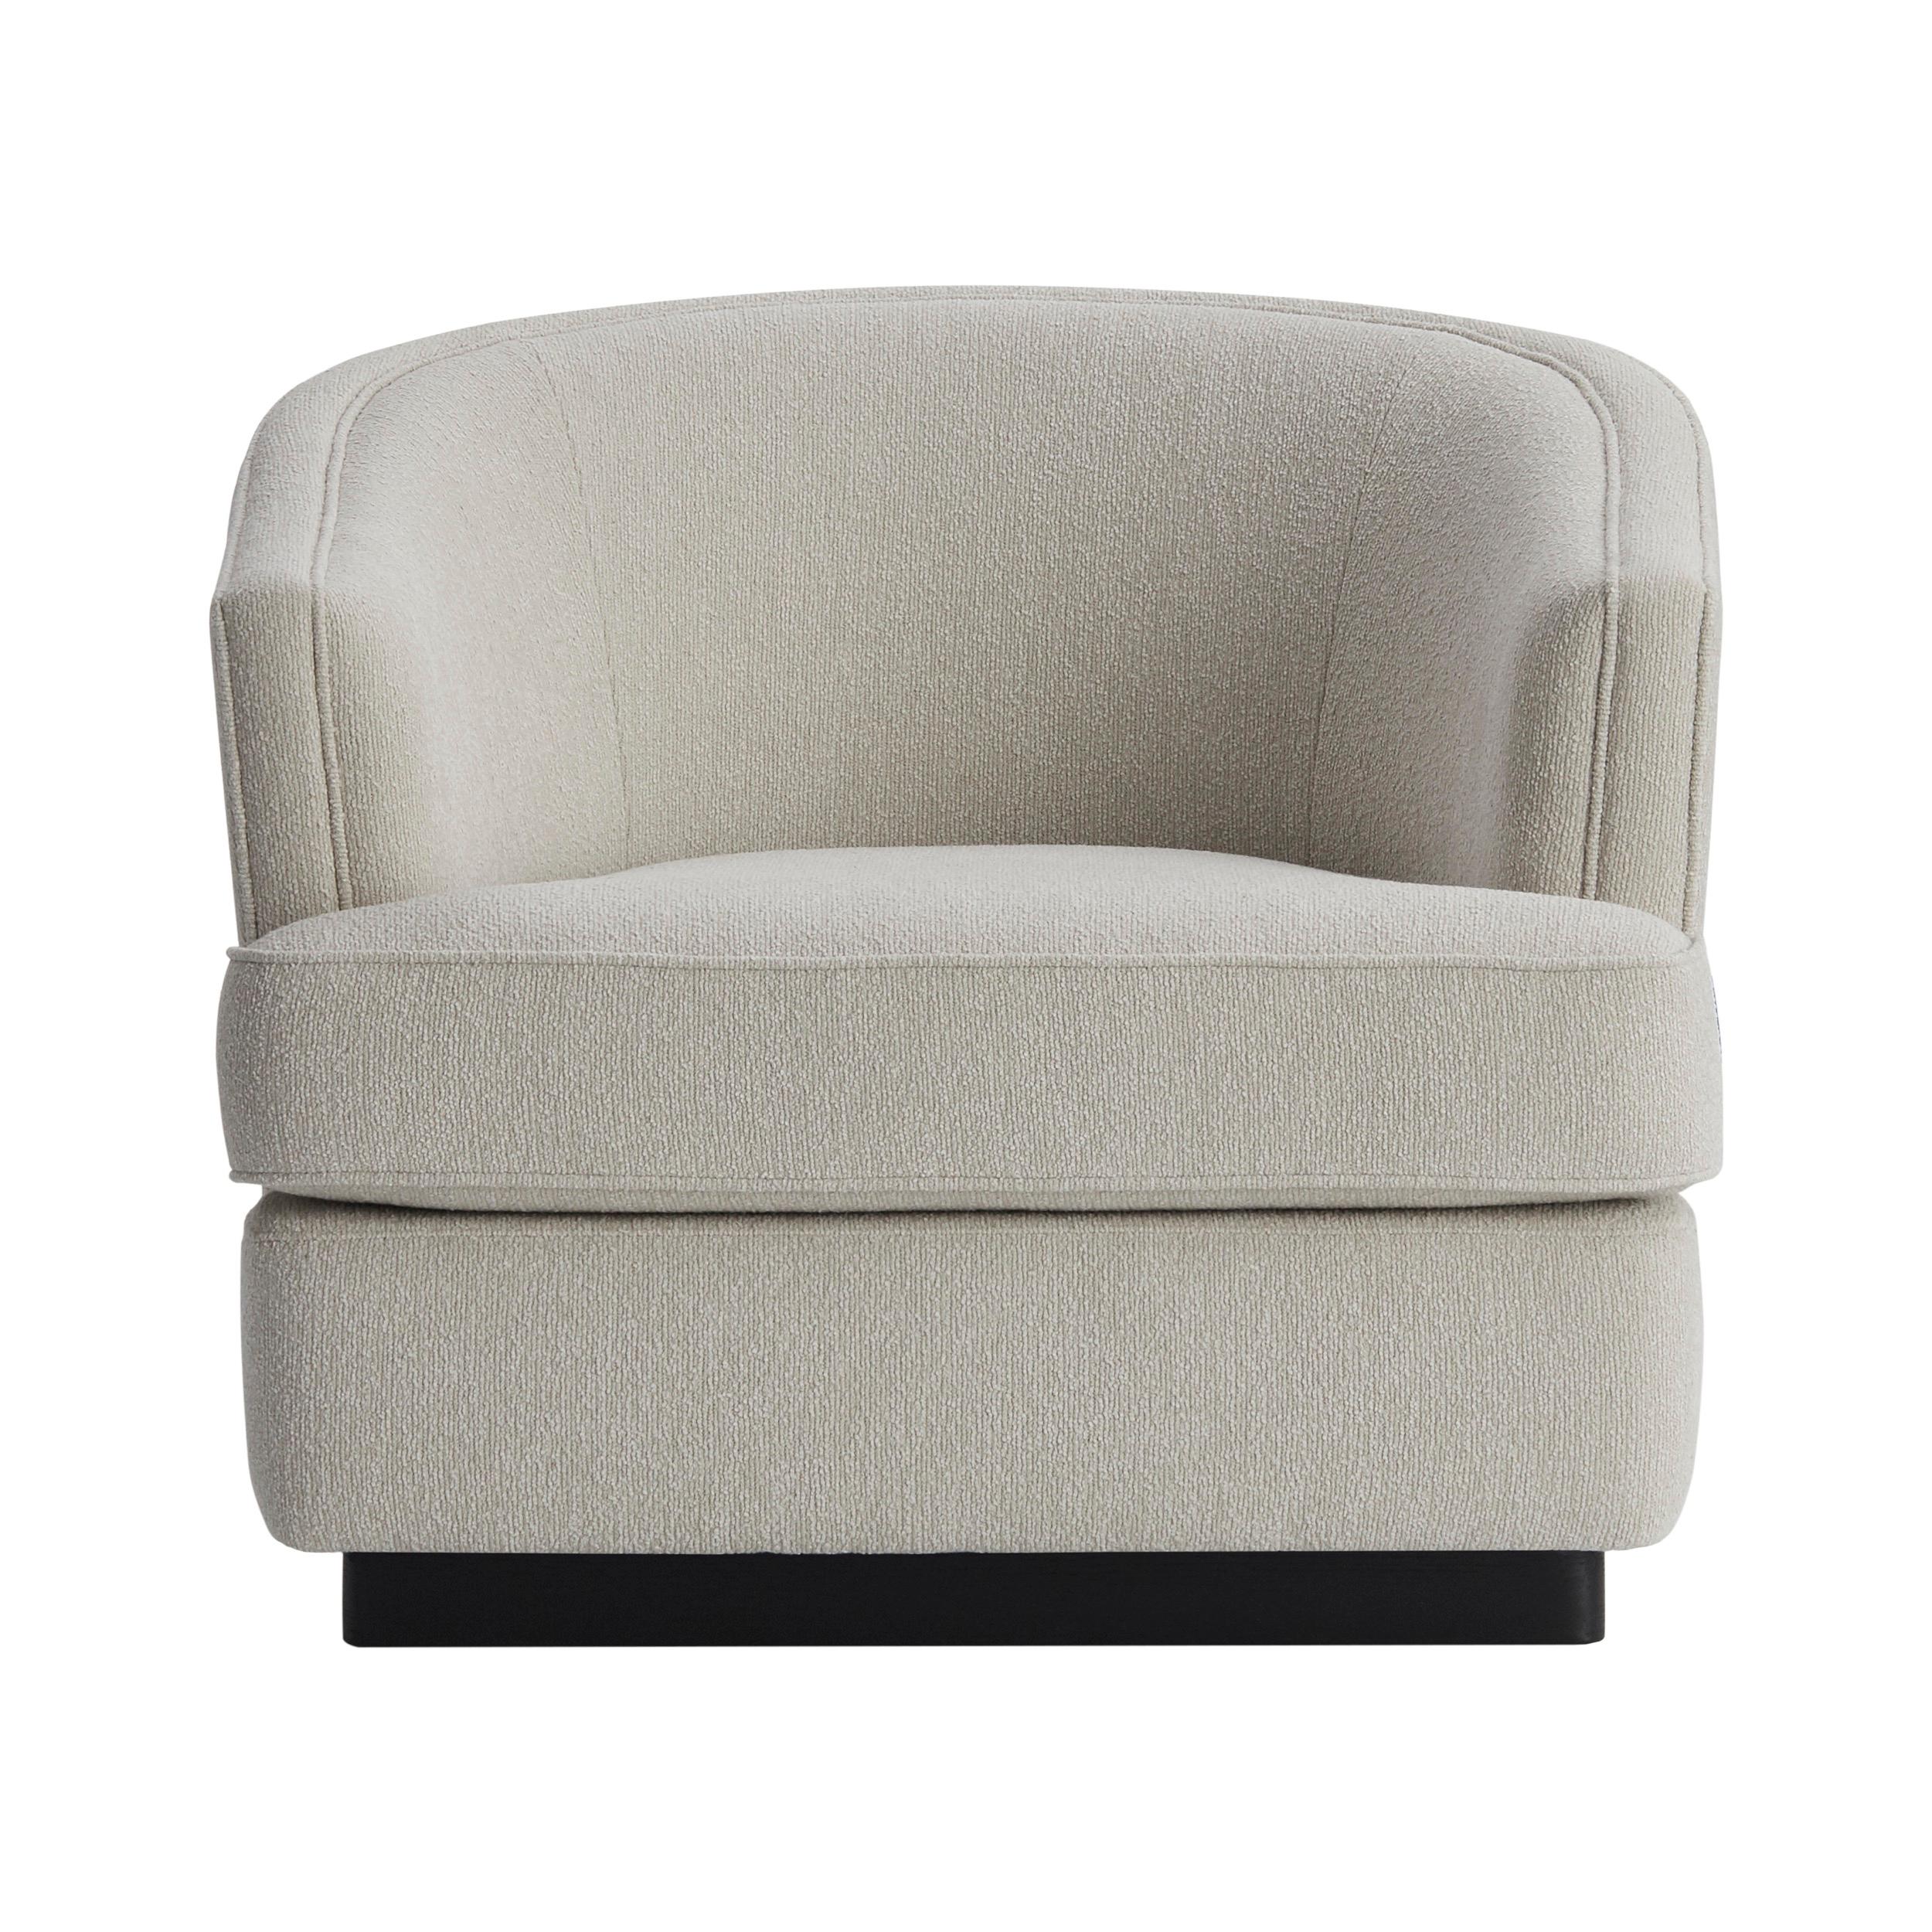 Der Sessel ROMANA mit lackiertem Holzsockel ist ein sehr klassisches und bequemes Möbelstück von unvergleichlicher Qualität, das für den täglichen Gebrauch bestimmt ist. Romana ist in einer breiten Palette von Stoffen, Öko-Leder, Naturleder oder COM